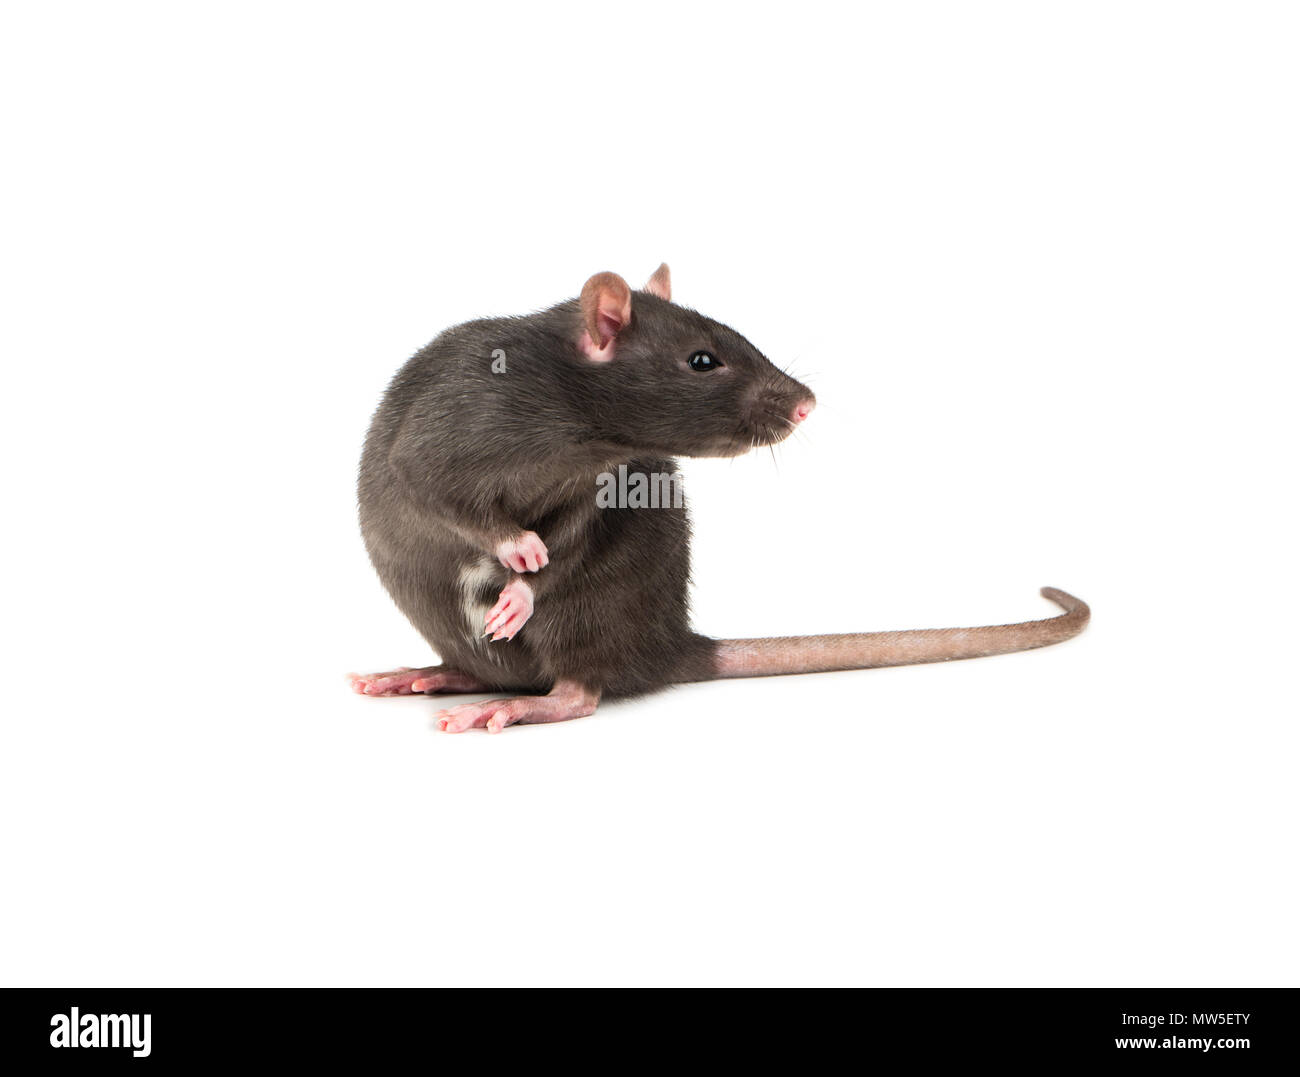 Niedliche graue Ratte sitzen auf zwei Beinen auf weißem Hintergrund  Stockfotografie - Alamy